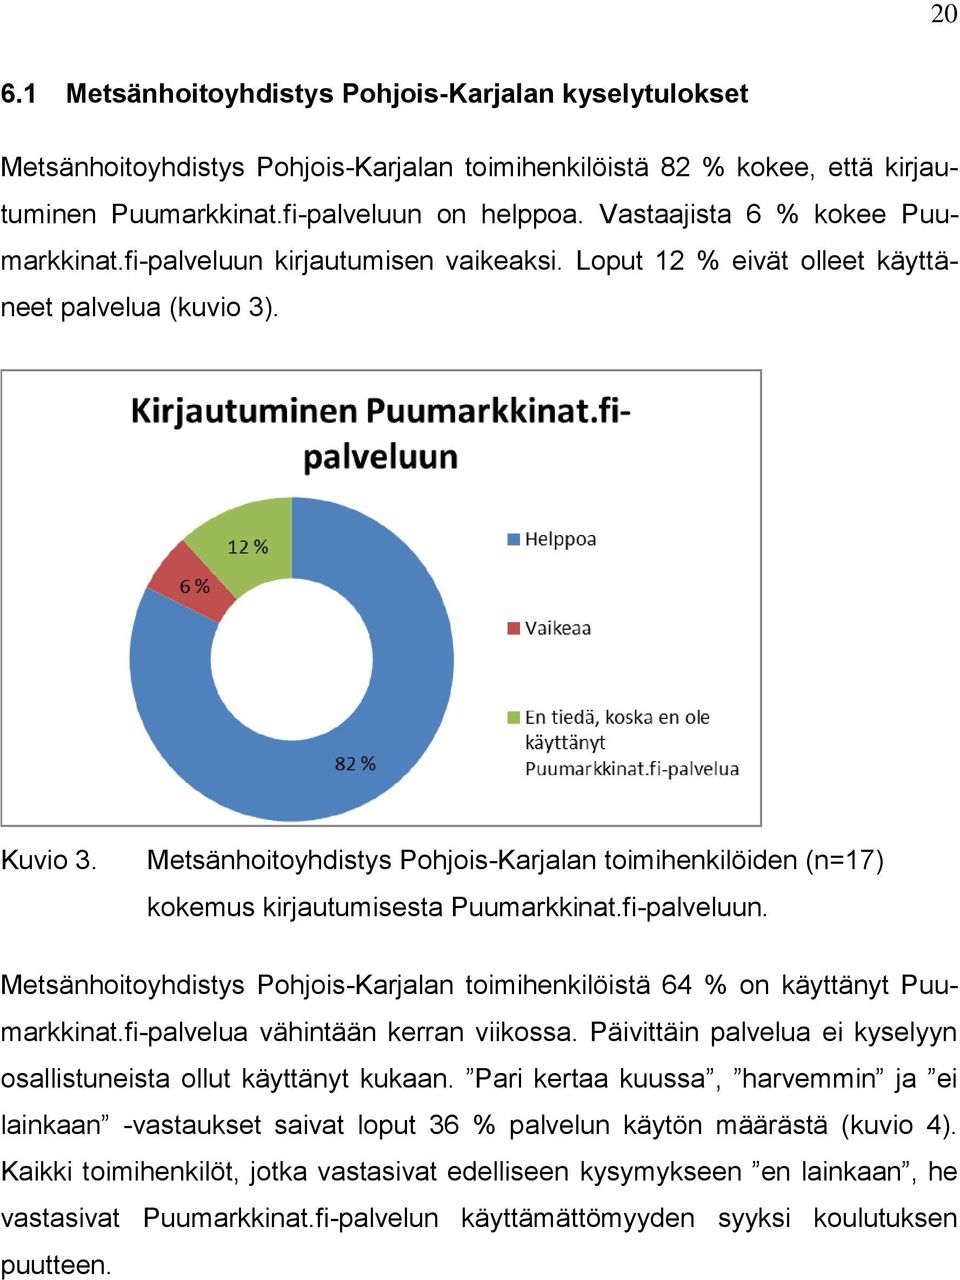 Metsänhoitoyhdistys Pohjois-Karjalan toimihenkilöiden (n=17) kokemus kirjautumisesta Puumarkkinat.fi-palveluun. Metsänhoitoyhdistys Pohjois-Karjalan toimihenkilöistä 64 % on käyttänyt Puumarkkinat.